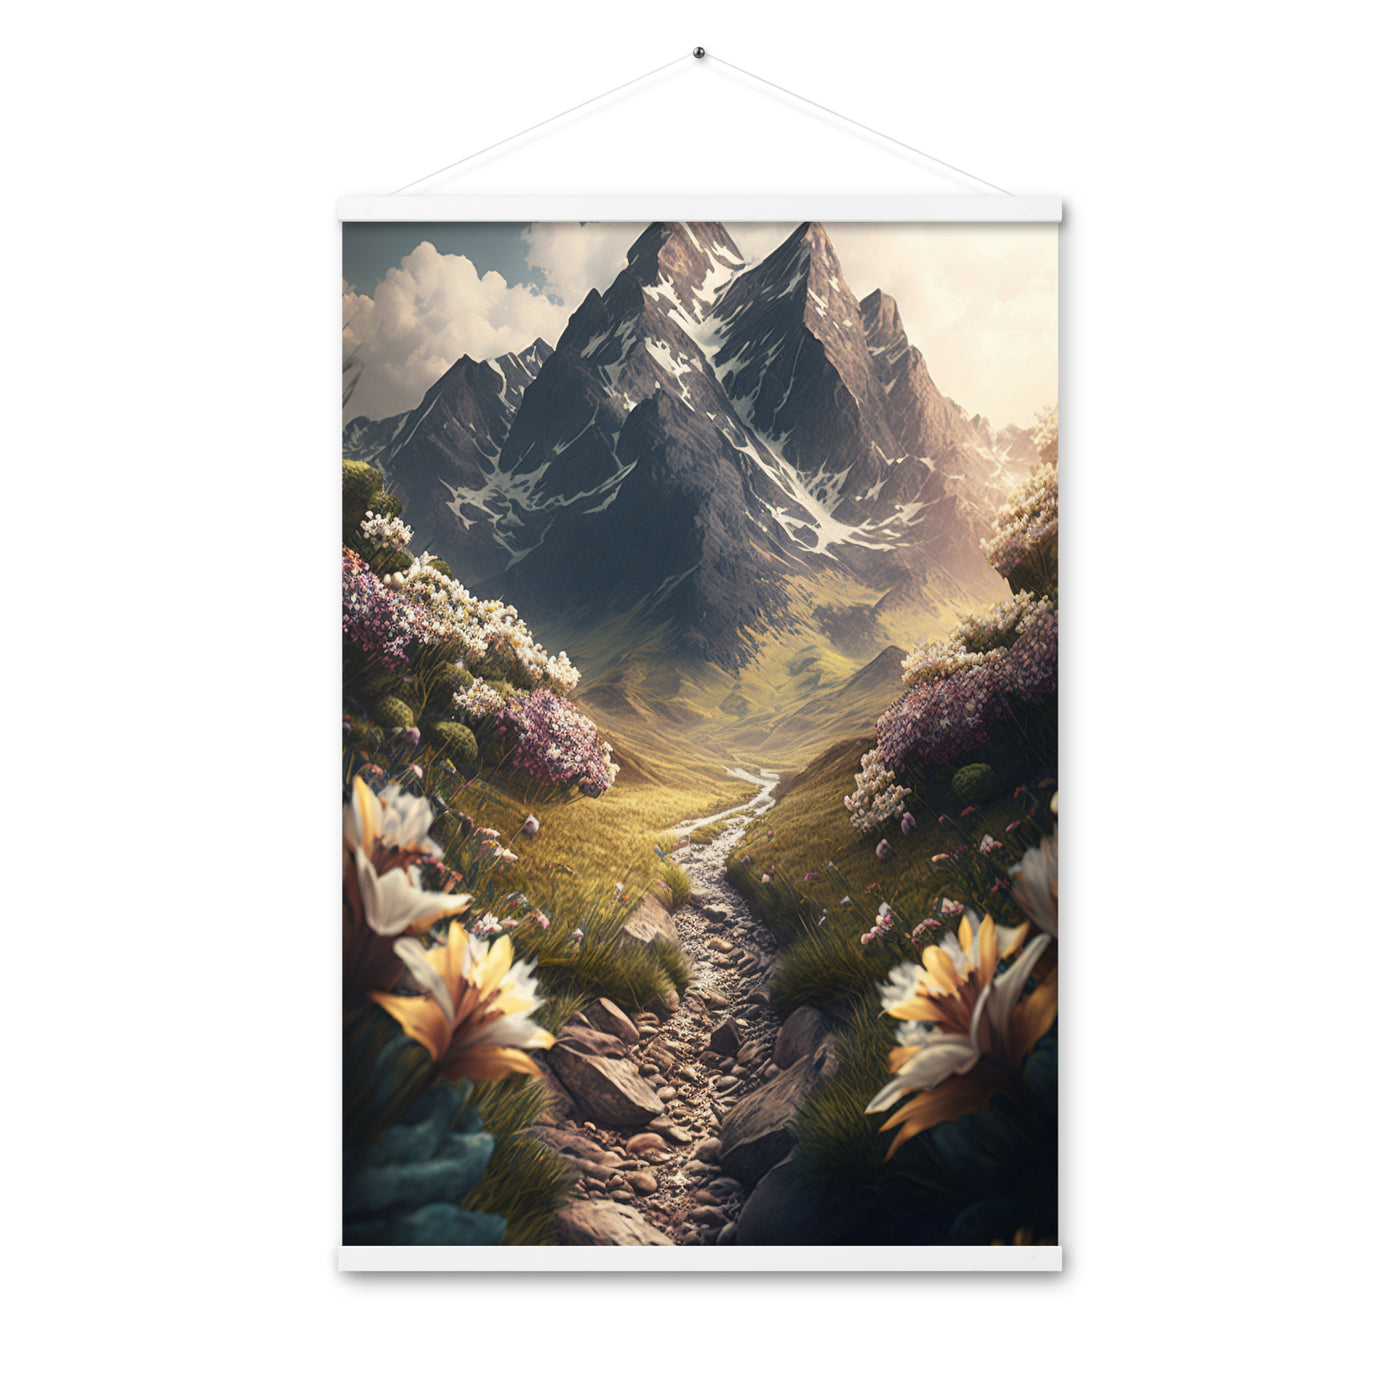 Epischer Berg, steiniger Weg und Blumen - Realistische Malerei - Premium Poster mit Aufhängung berge xxx 61 x 91.4 cm